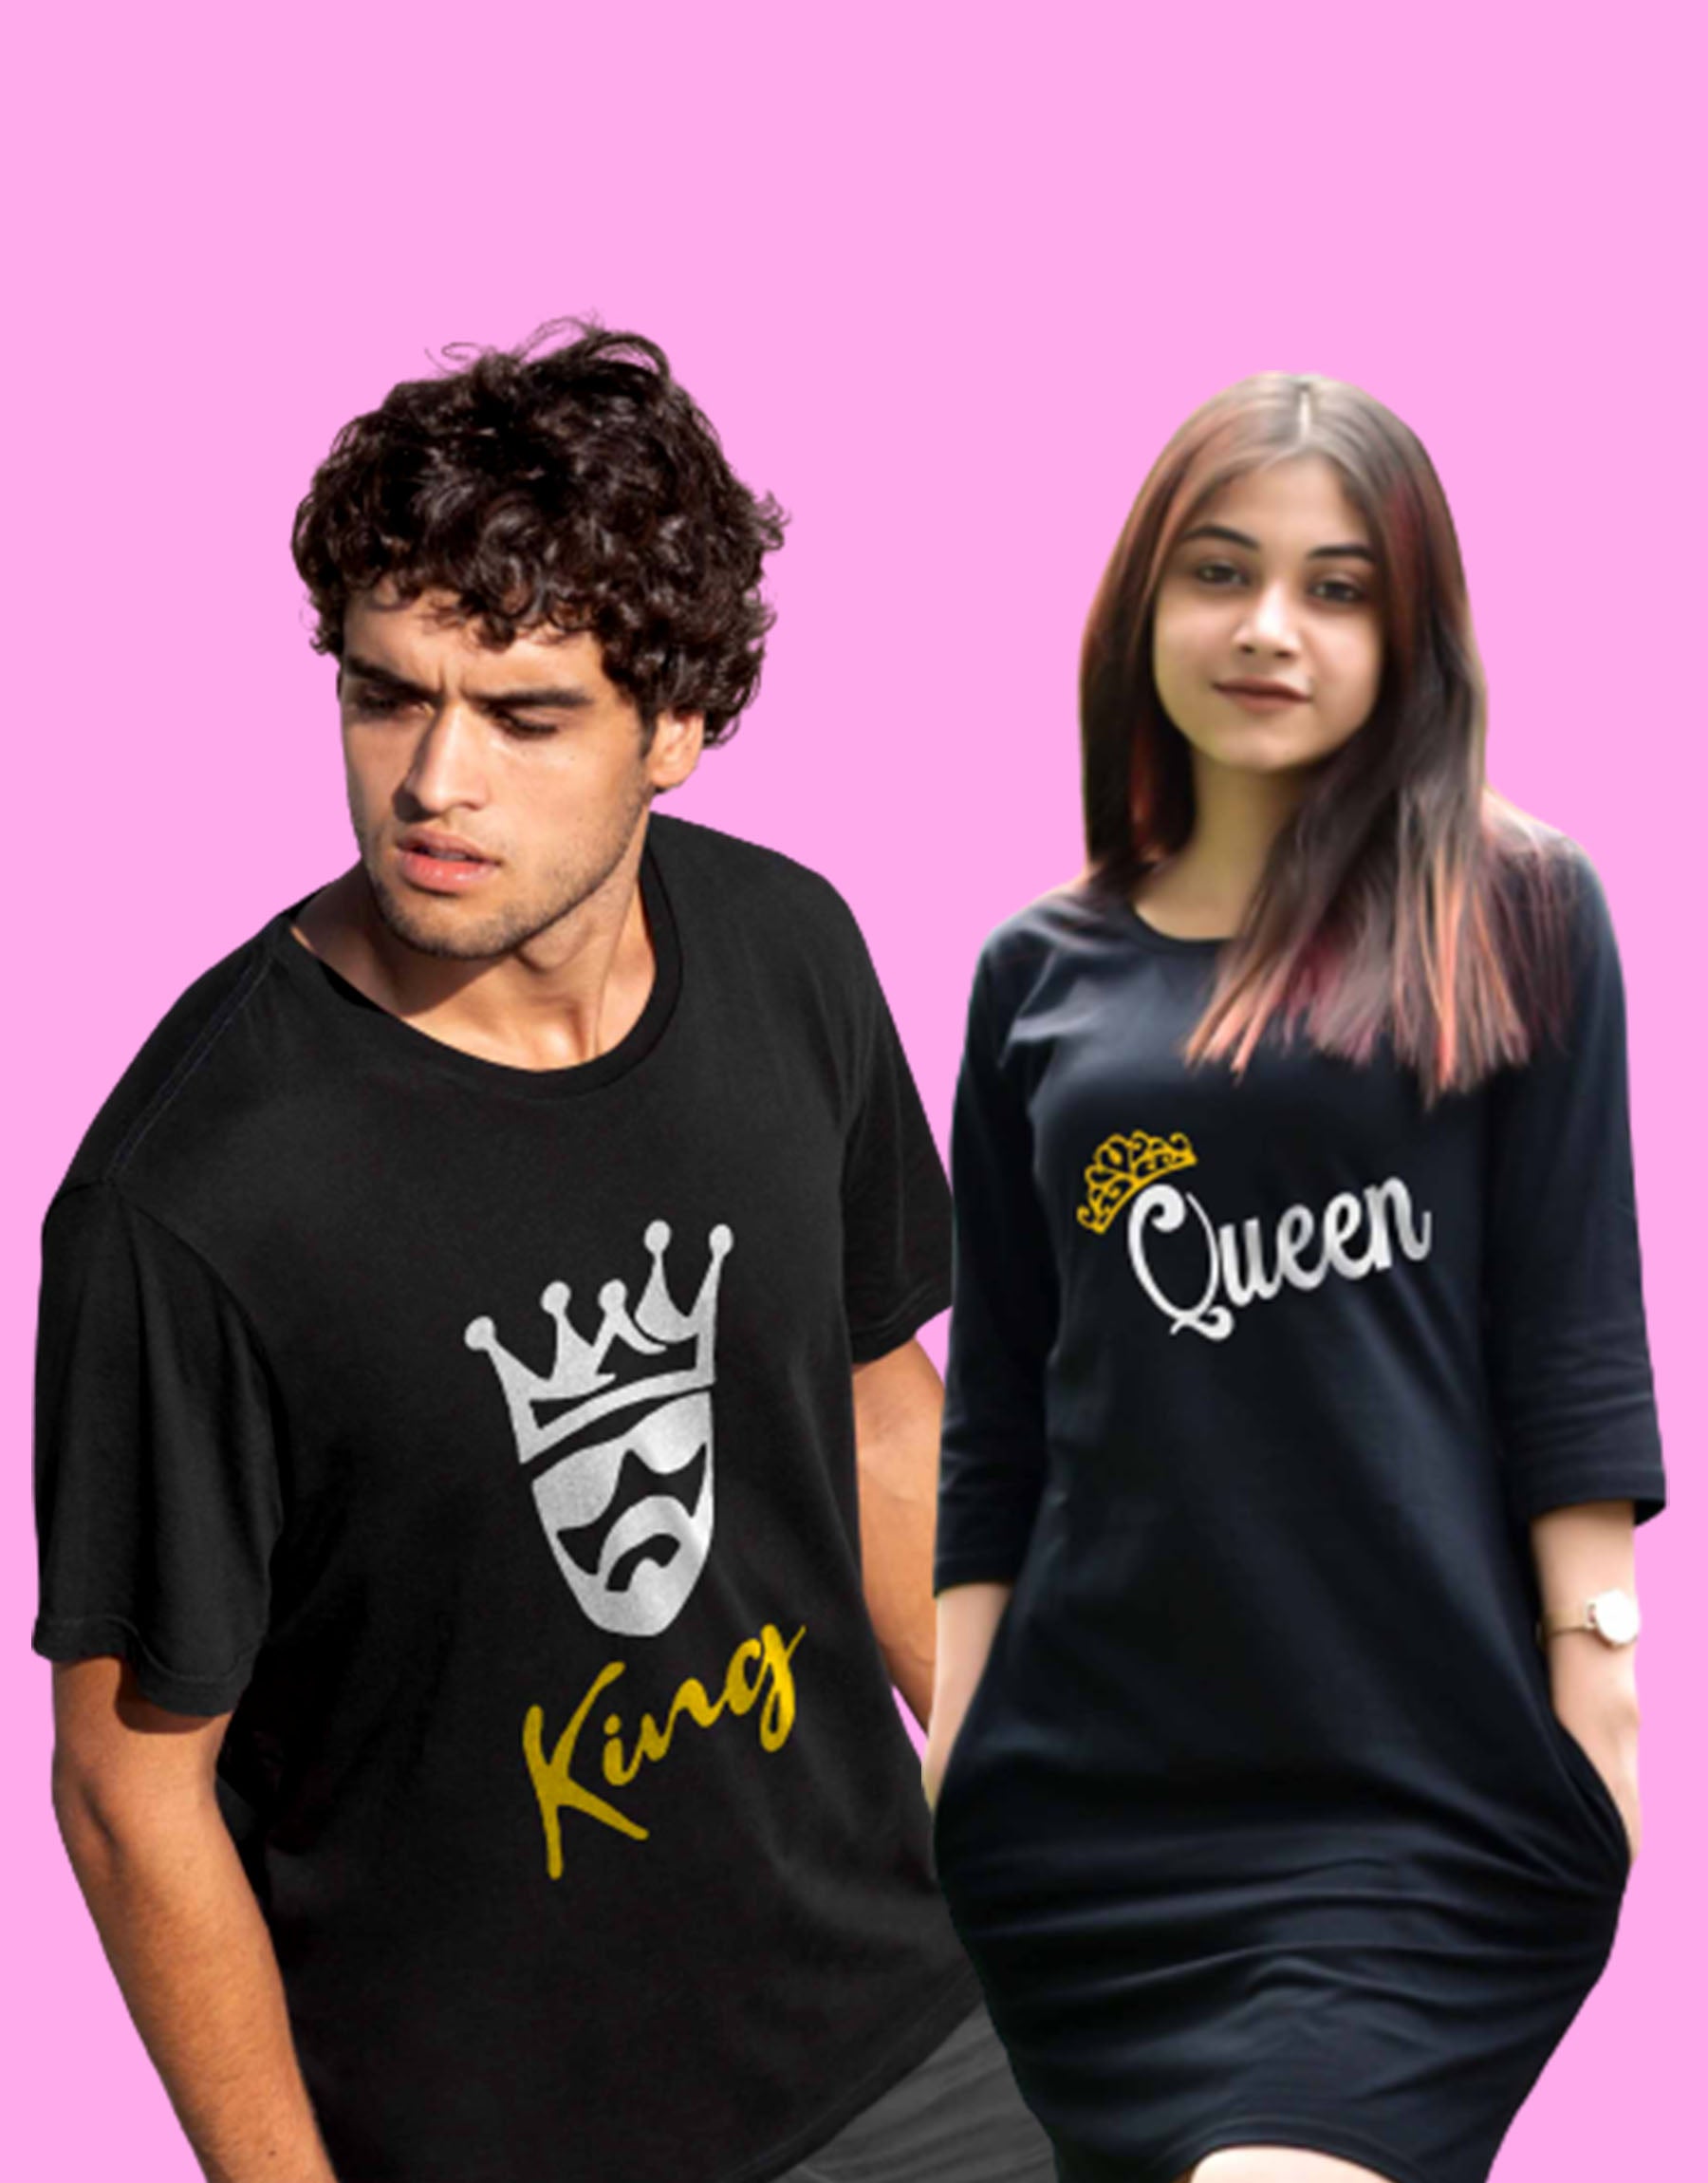 Couple dress | king - Queen - 1099.00 - TEEGURUJI - Free Shipping